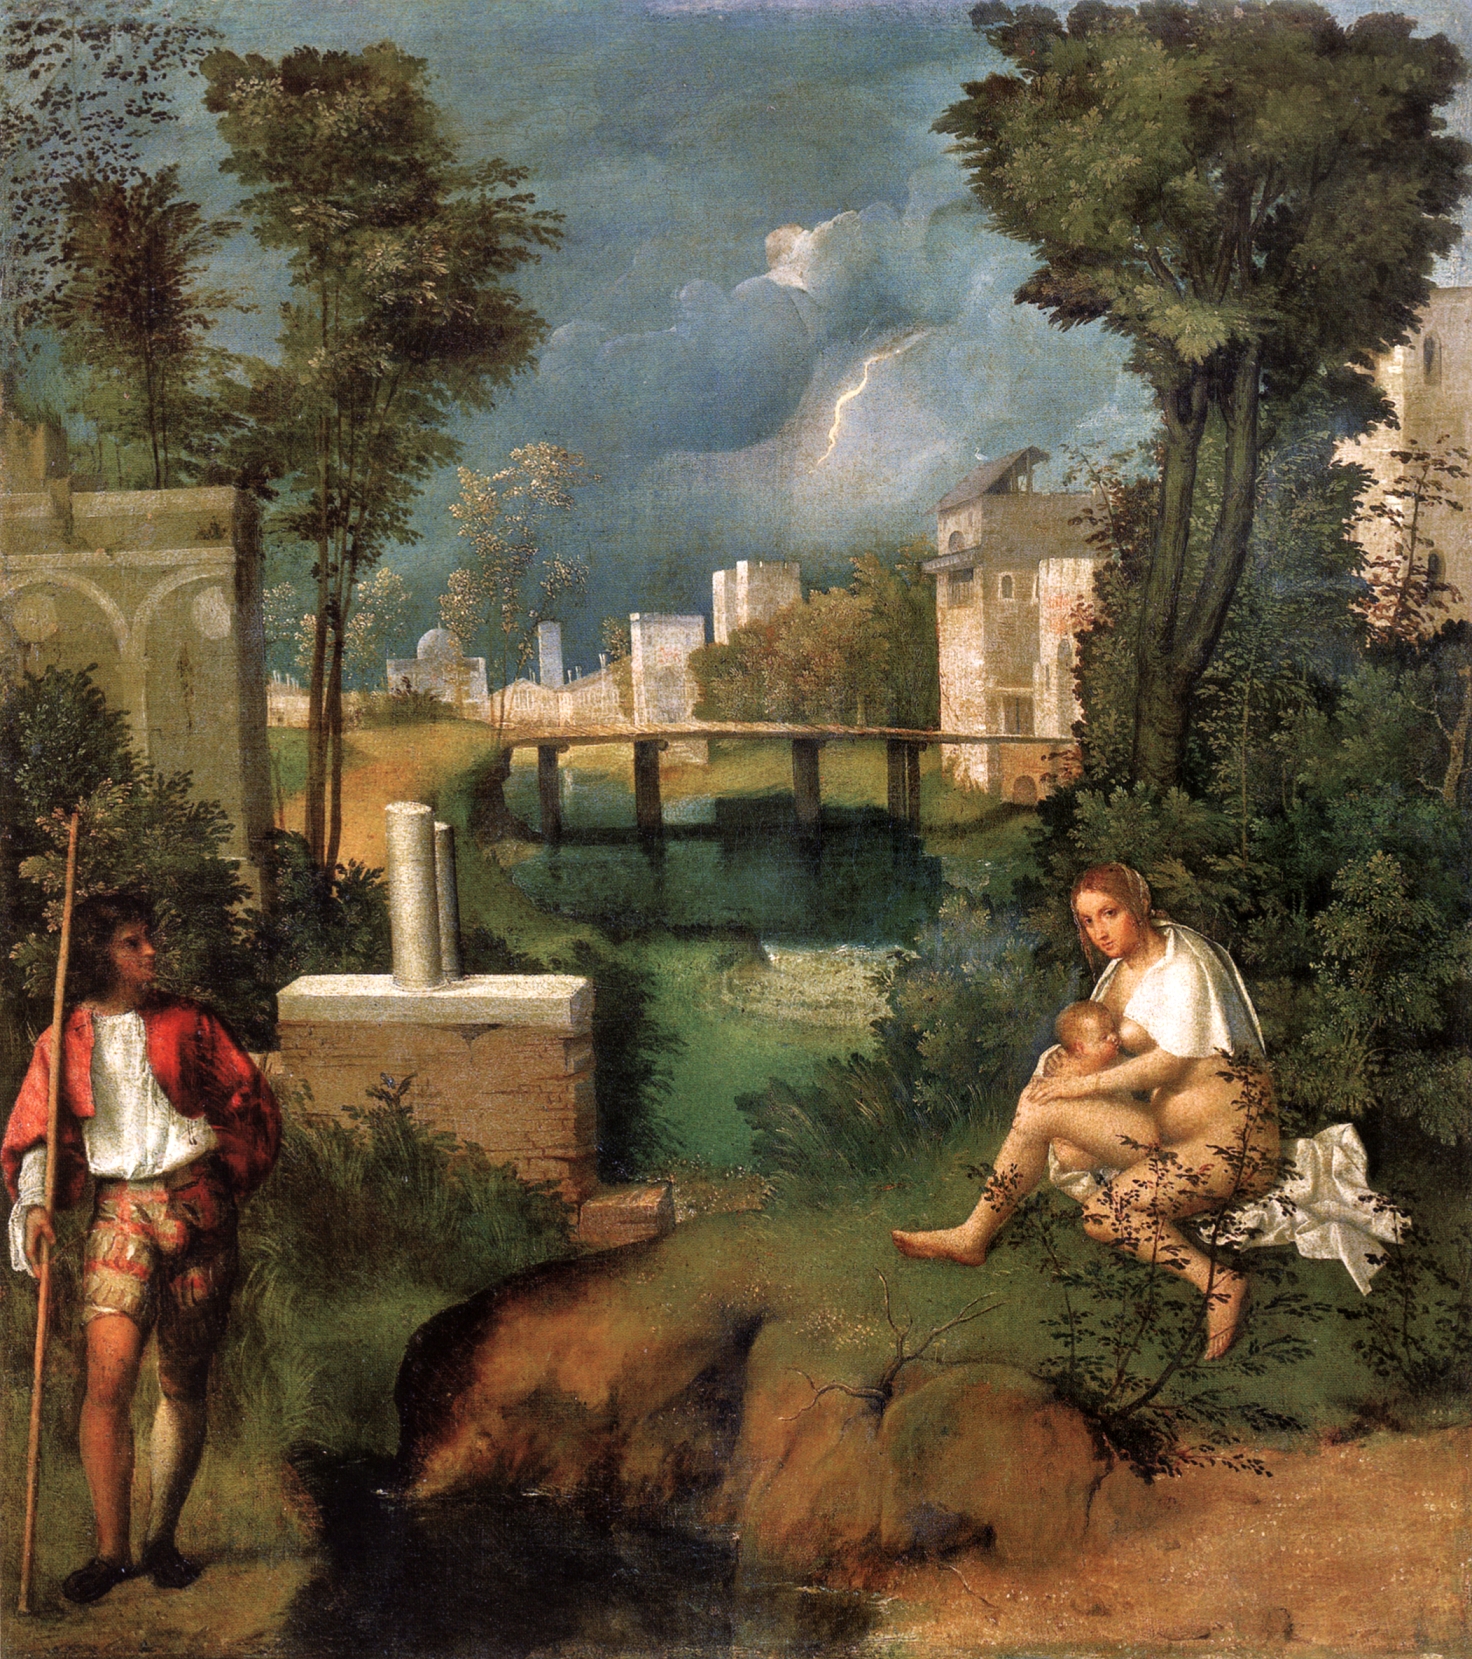 La Tempesta by Giorgio Barbarelli - c. 1508 - 83 cm × 73 cm 